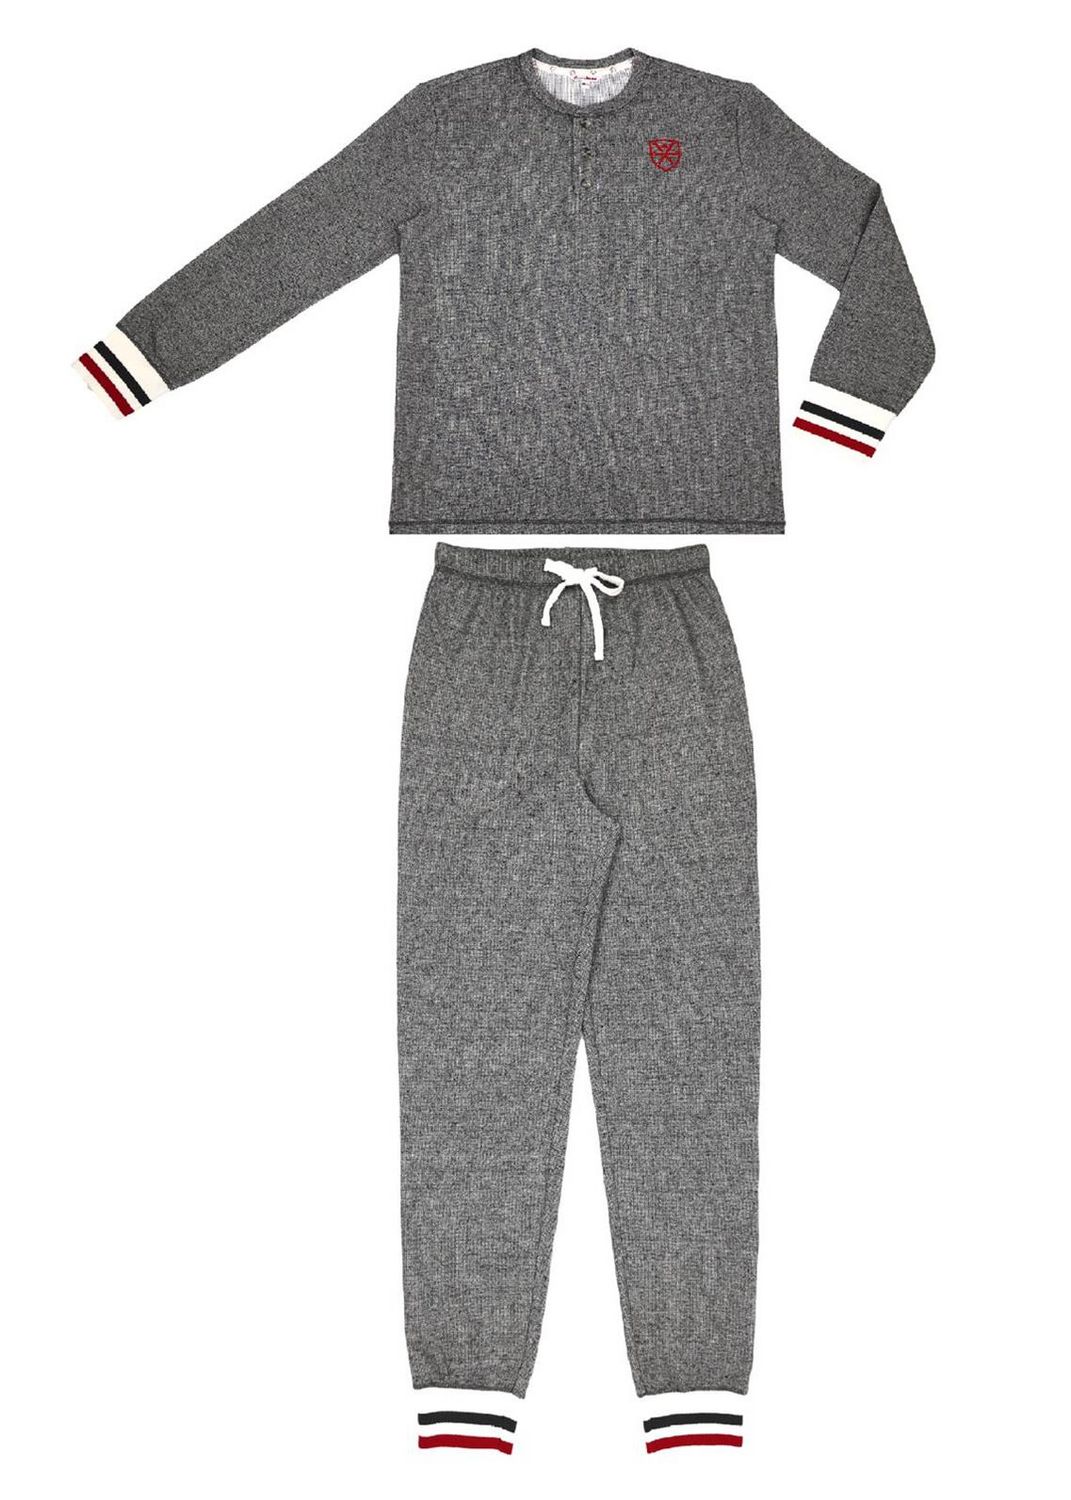 Canadiana Men's 2-Piece Pyjama Set | Walmart Canada